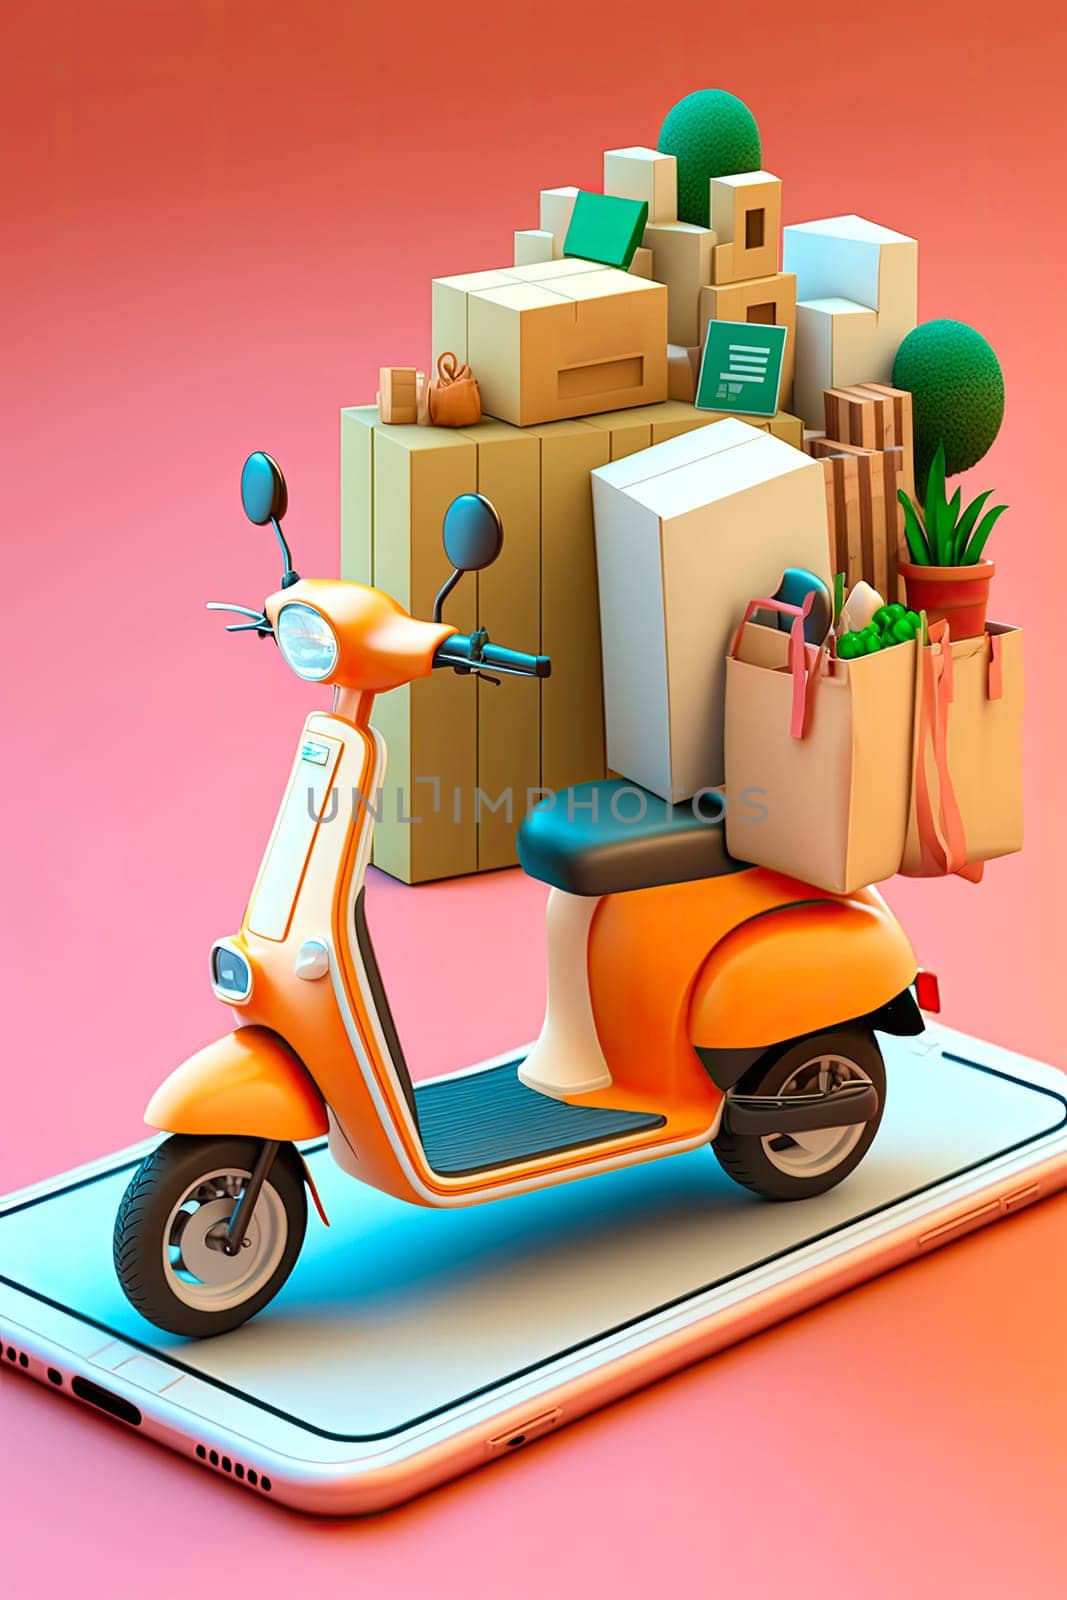 motorcycle delivery service. by yanadjana